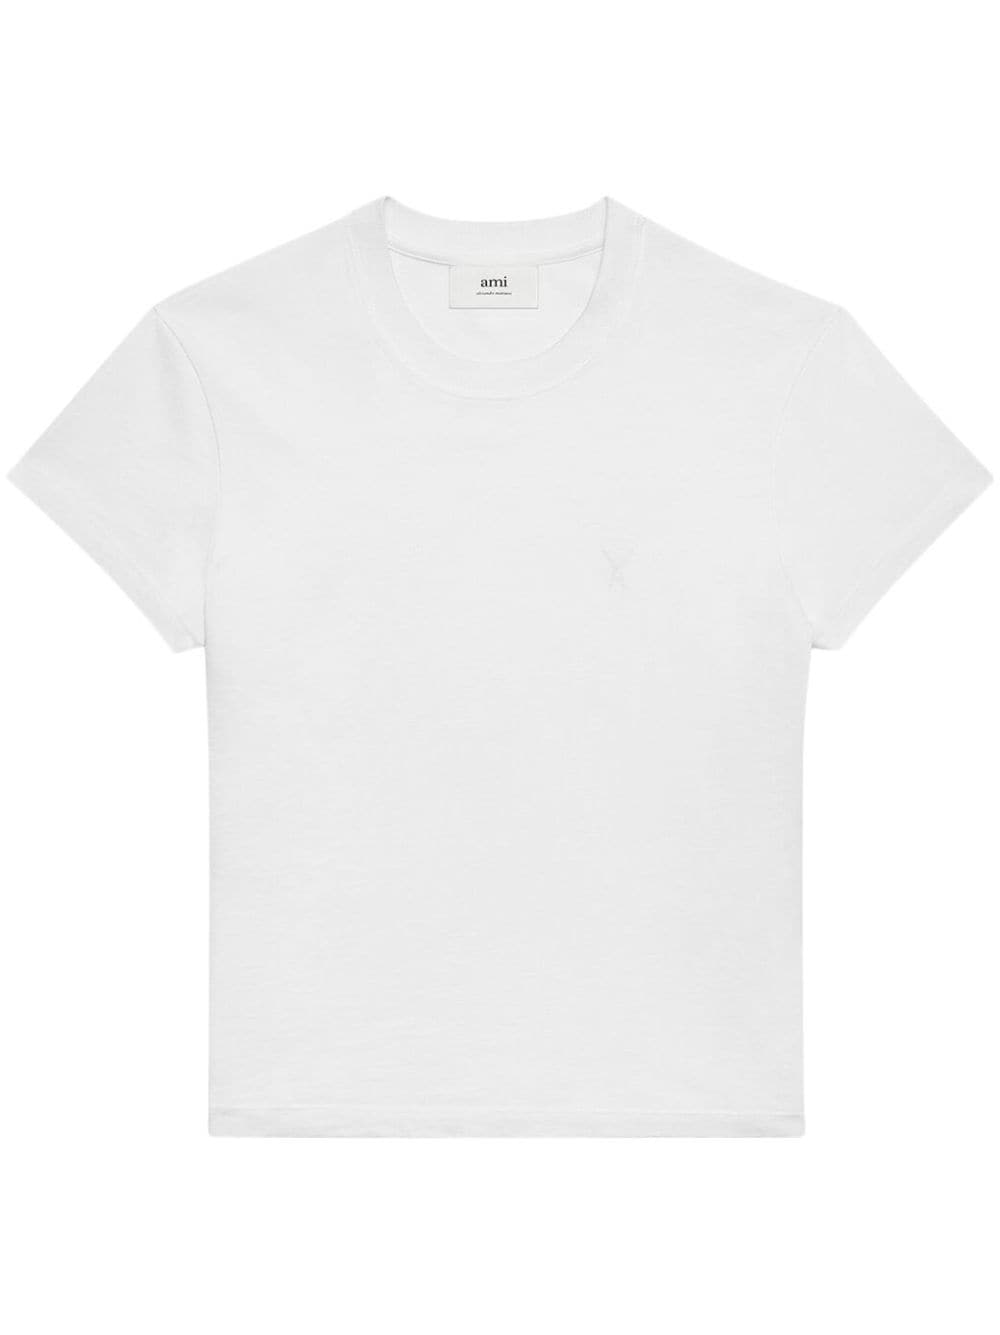 AMI Paris - T-Shirt white coton - Lothaire